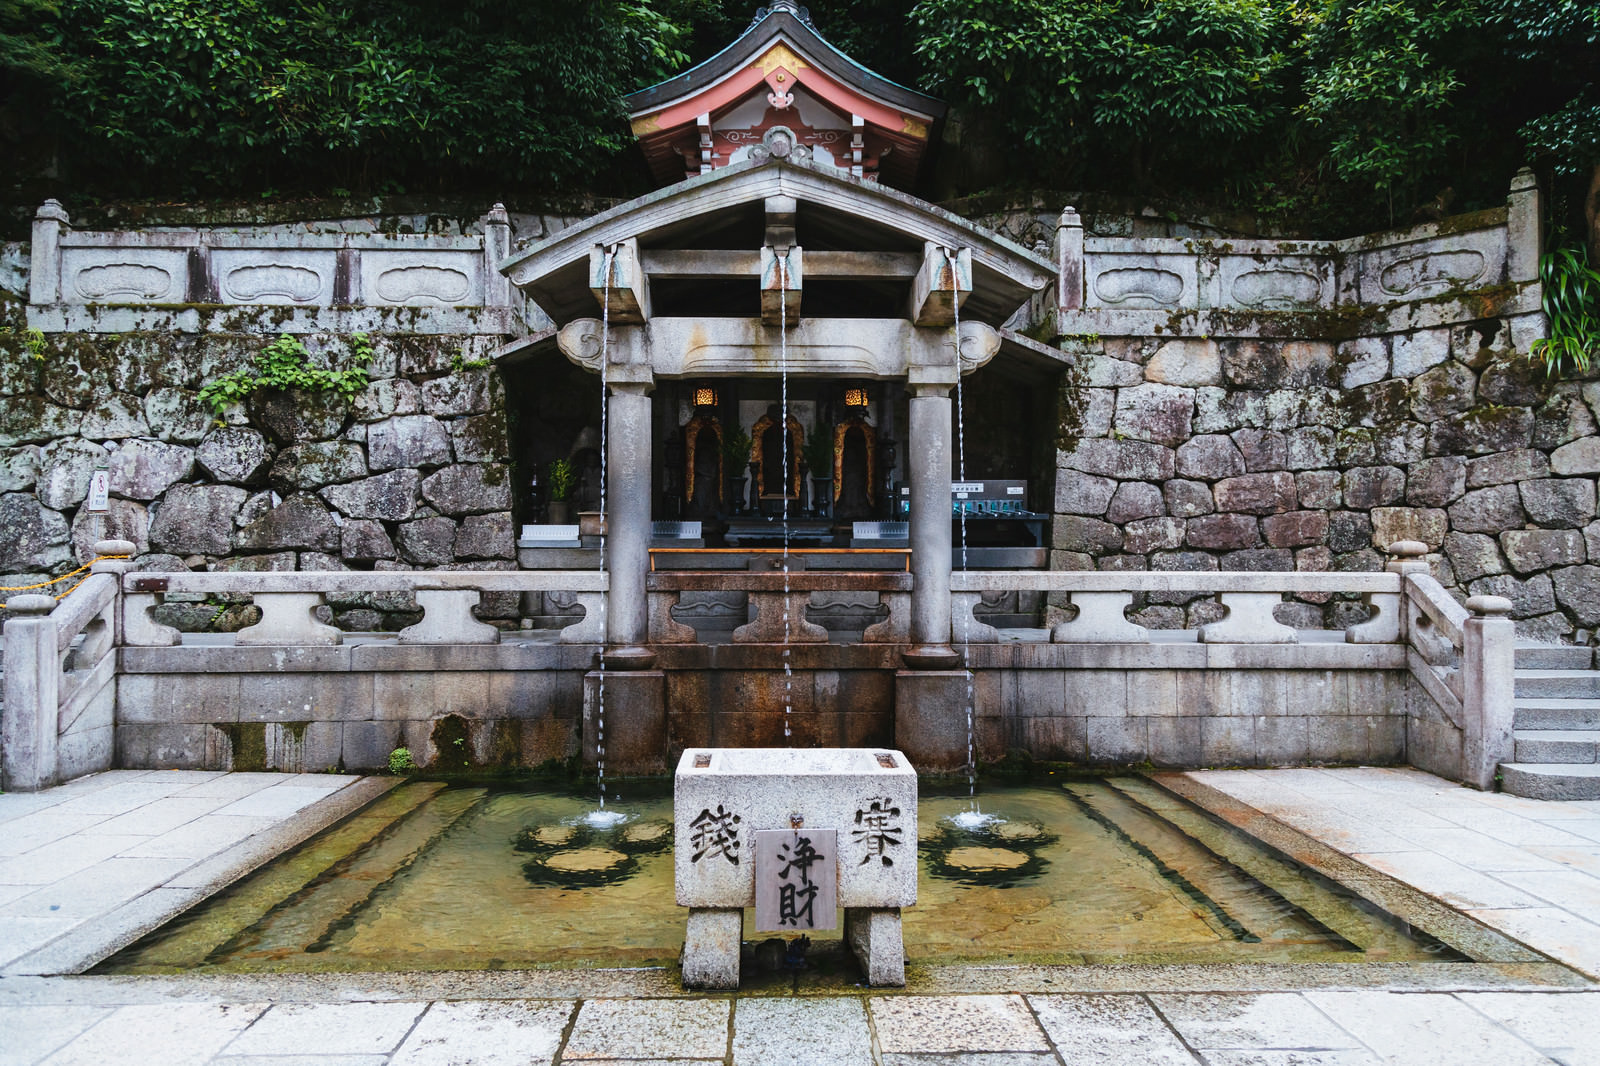 京都 清水寺の 音羽の滝 の無料の写真素材 フリー素材 をダウンロード ぱくたそ